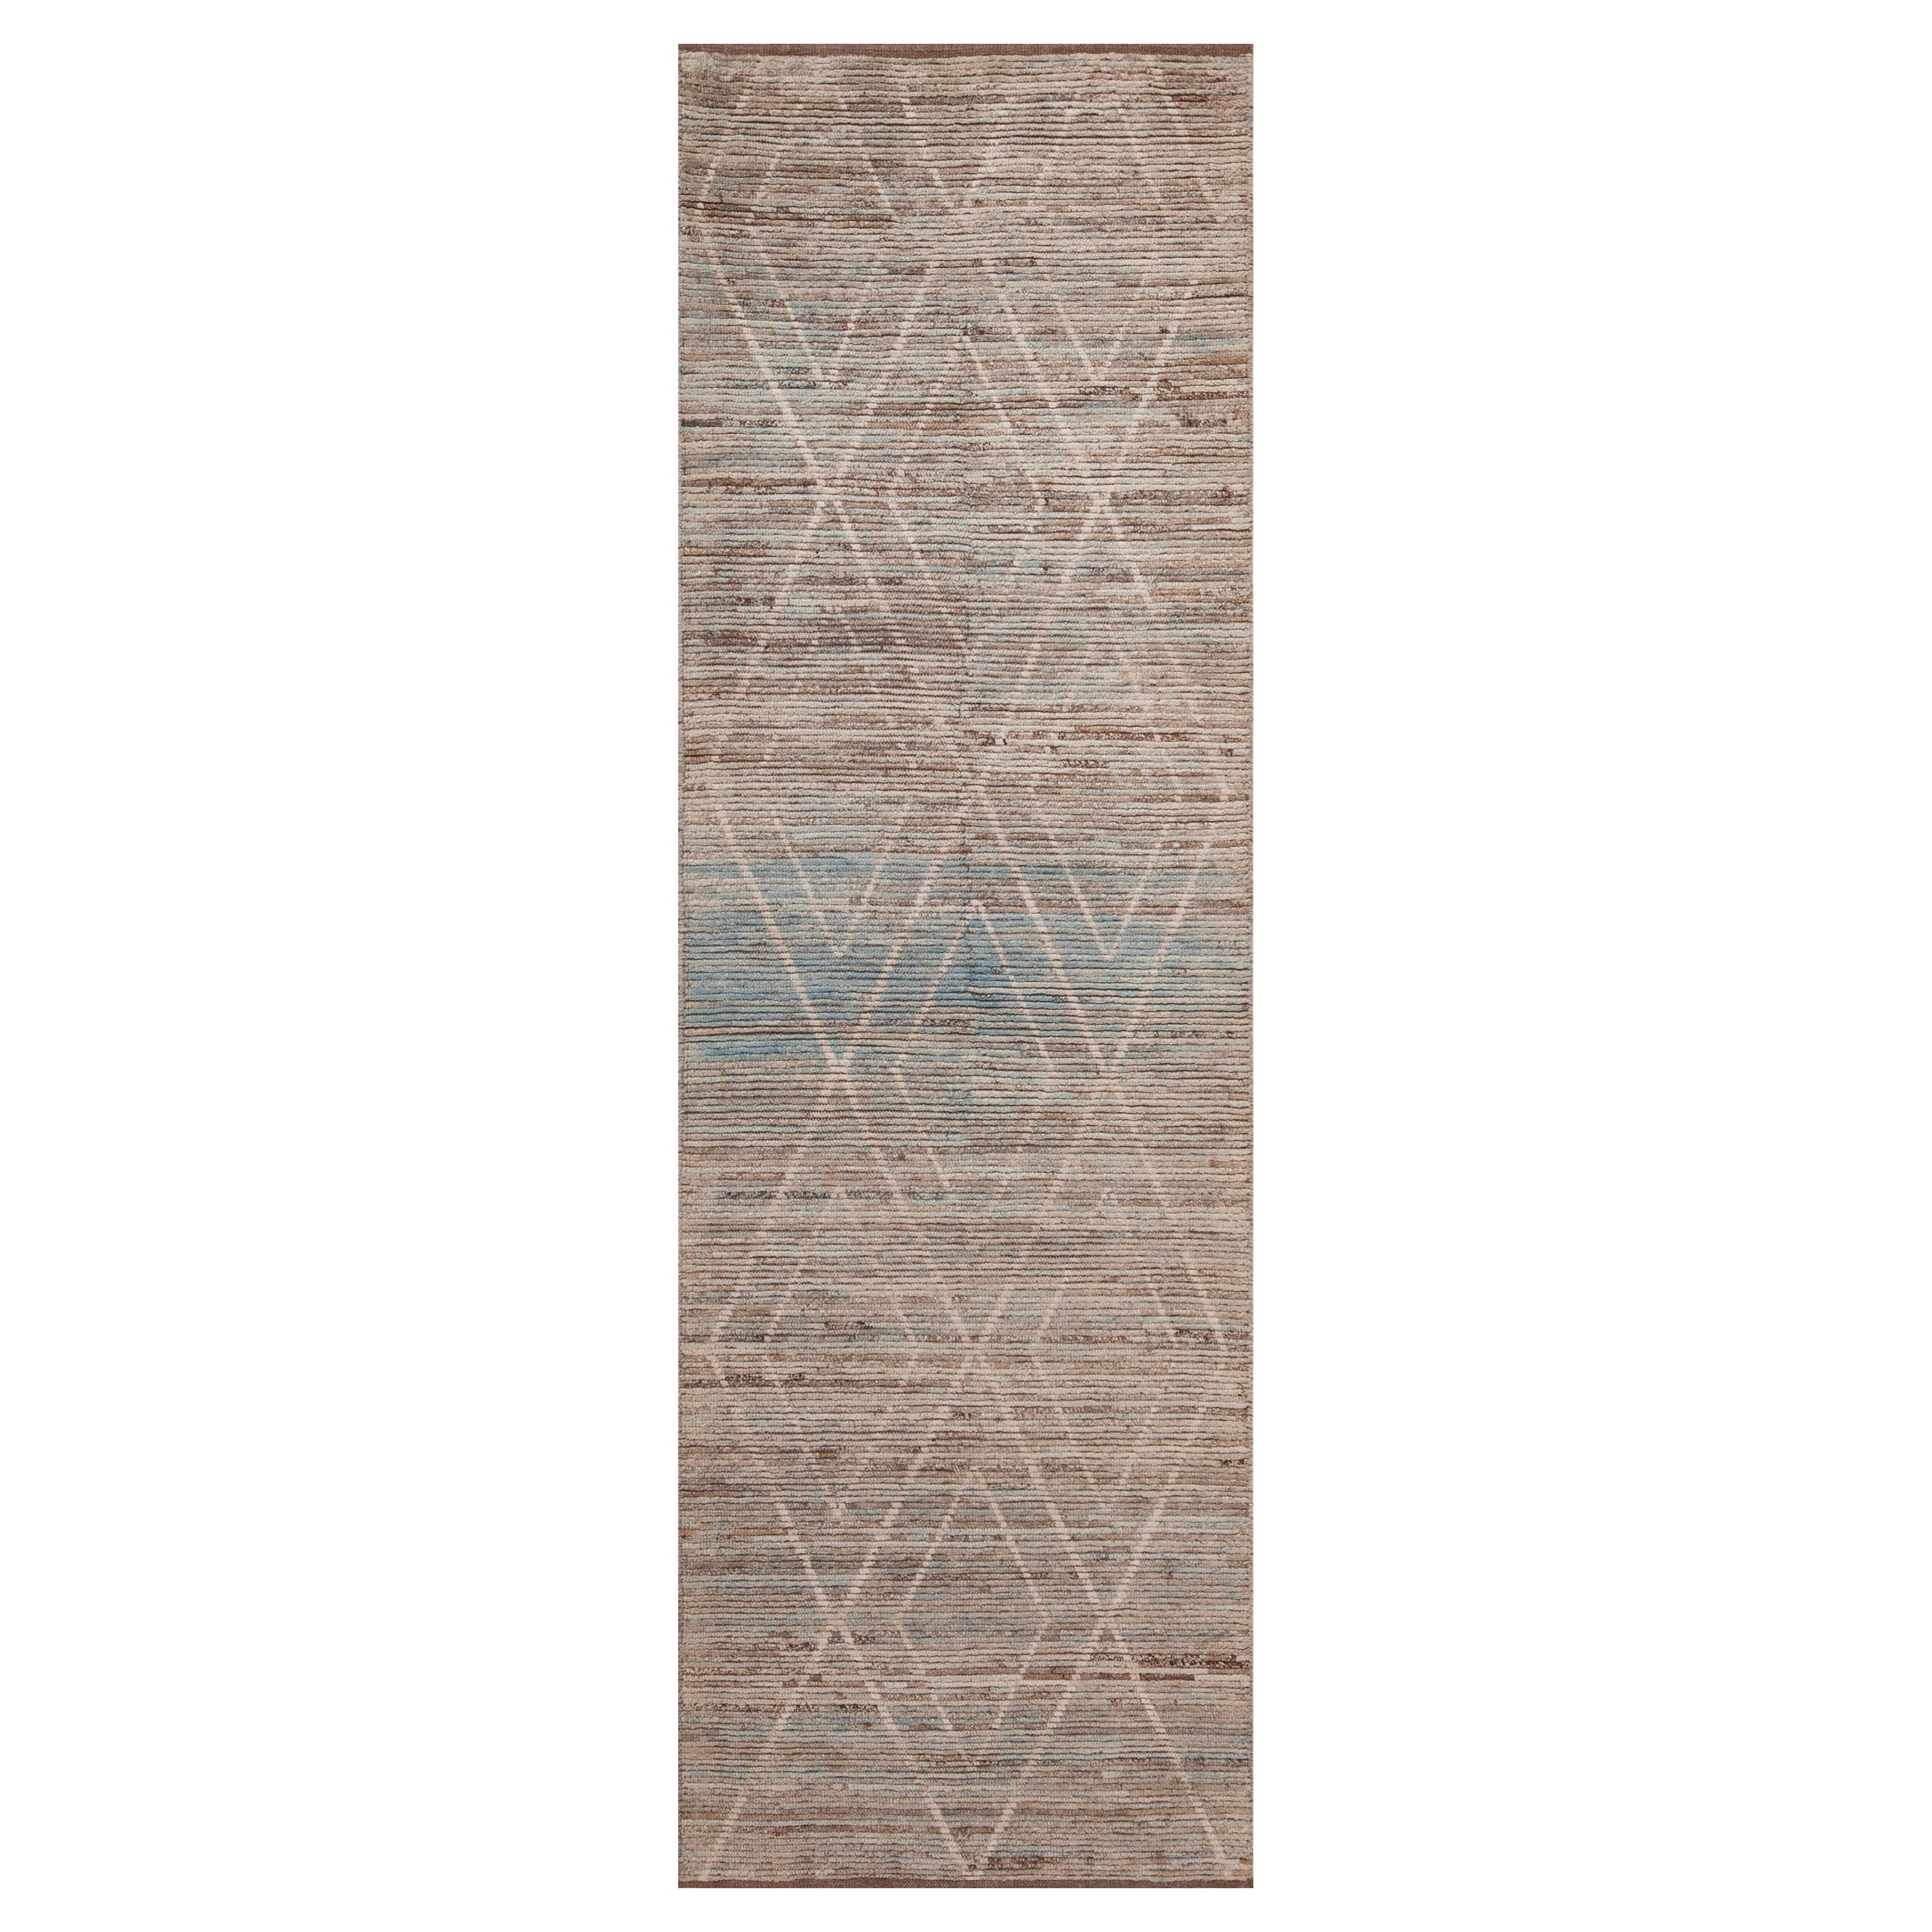 Tapis de course moderne Beni Ourain de la collection Nazmiyal, géométrique et tribal, 3' x 9'8".